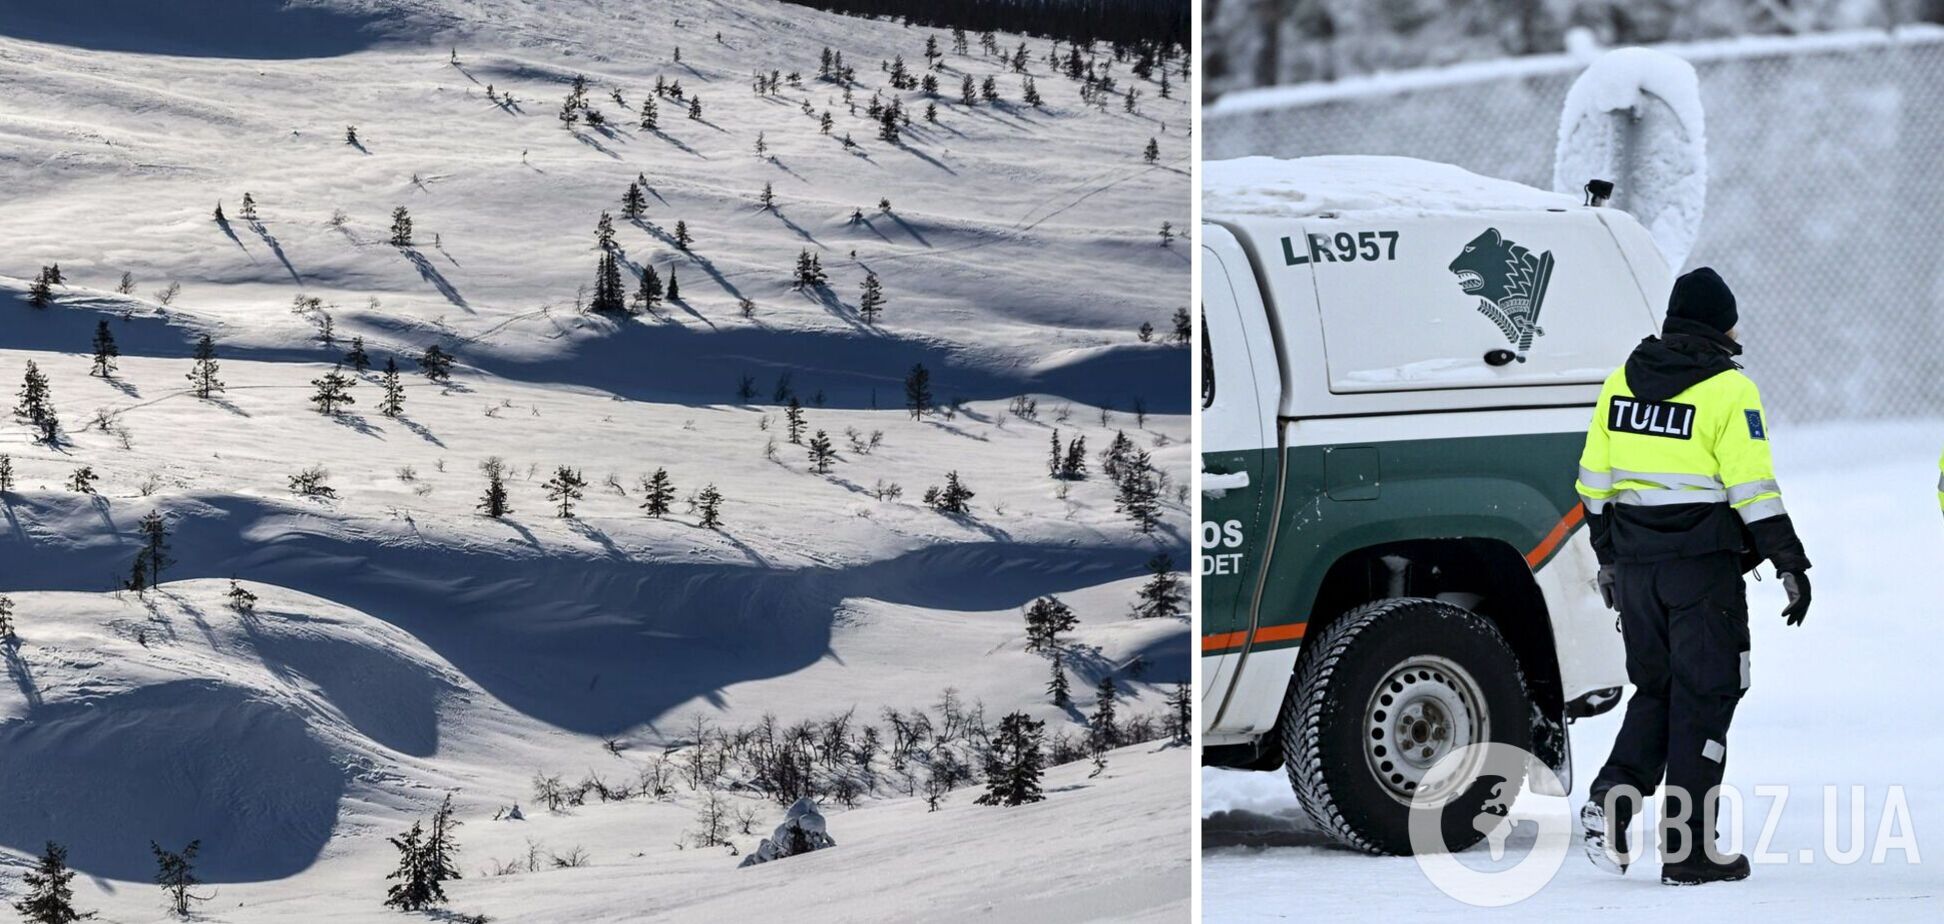 У Фінляндії на гірськолижному курорті зійшла лавина: мати загинула, дитина пропала безвісти